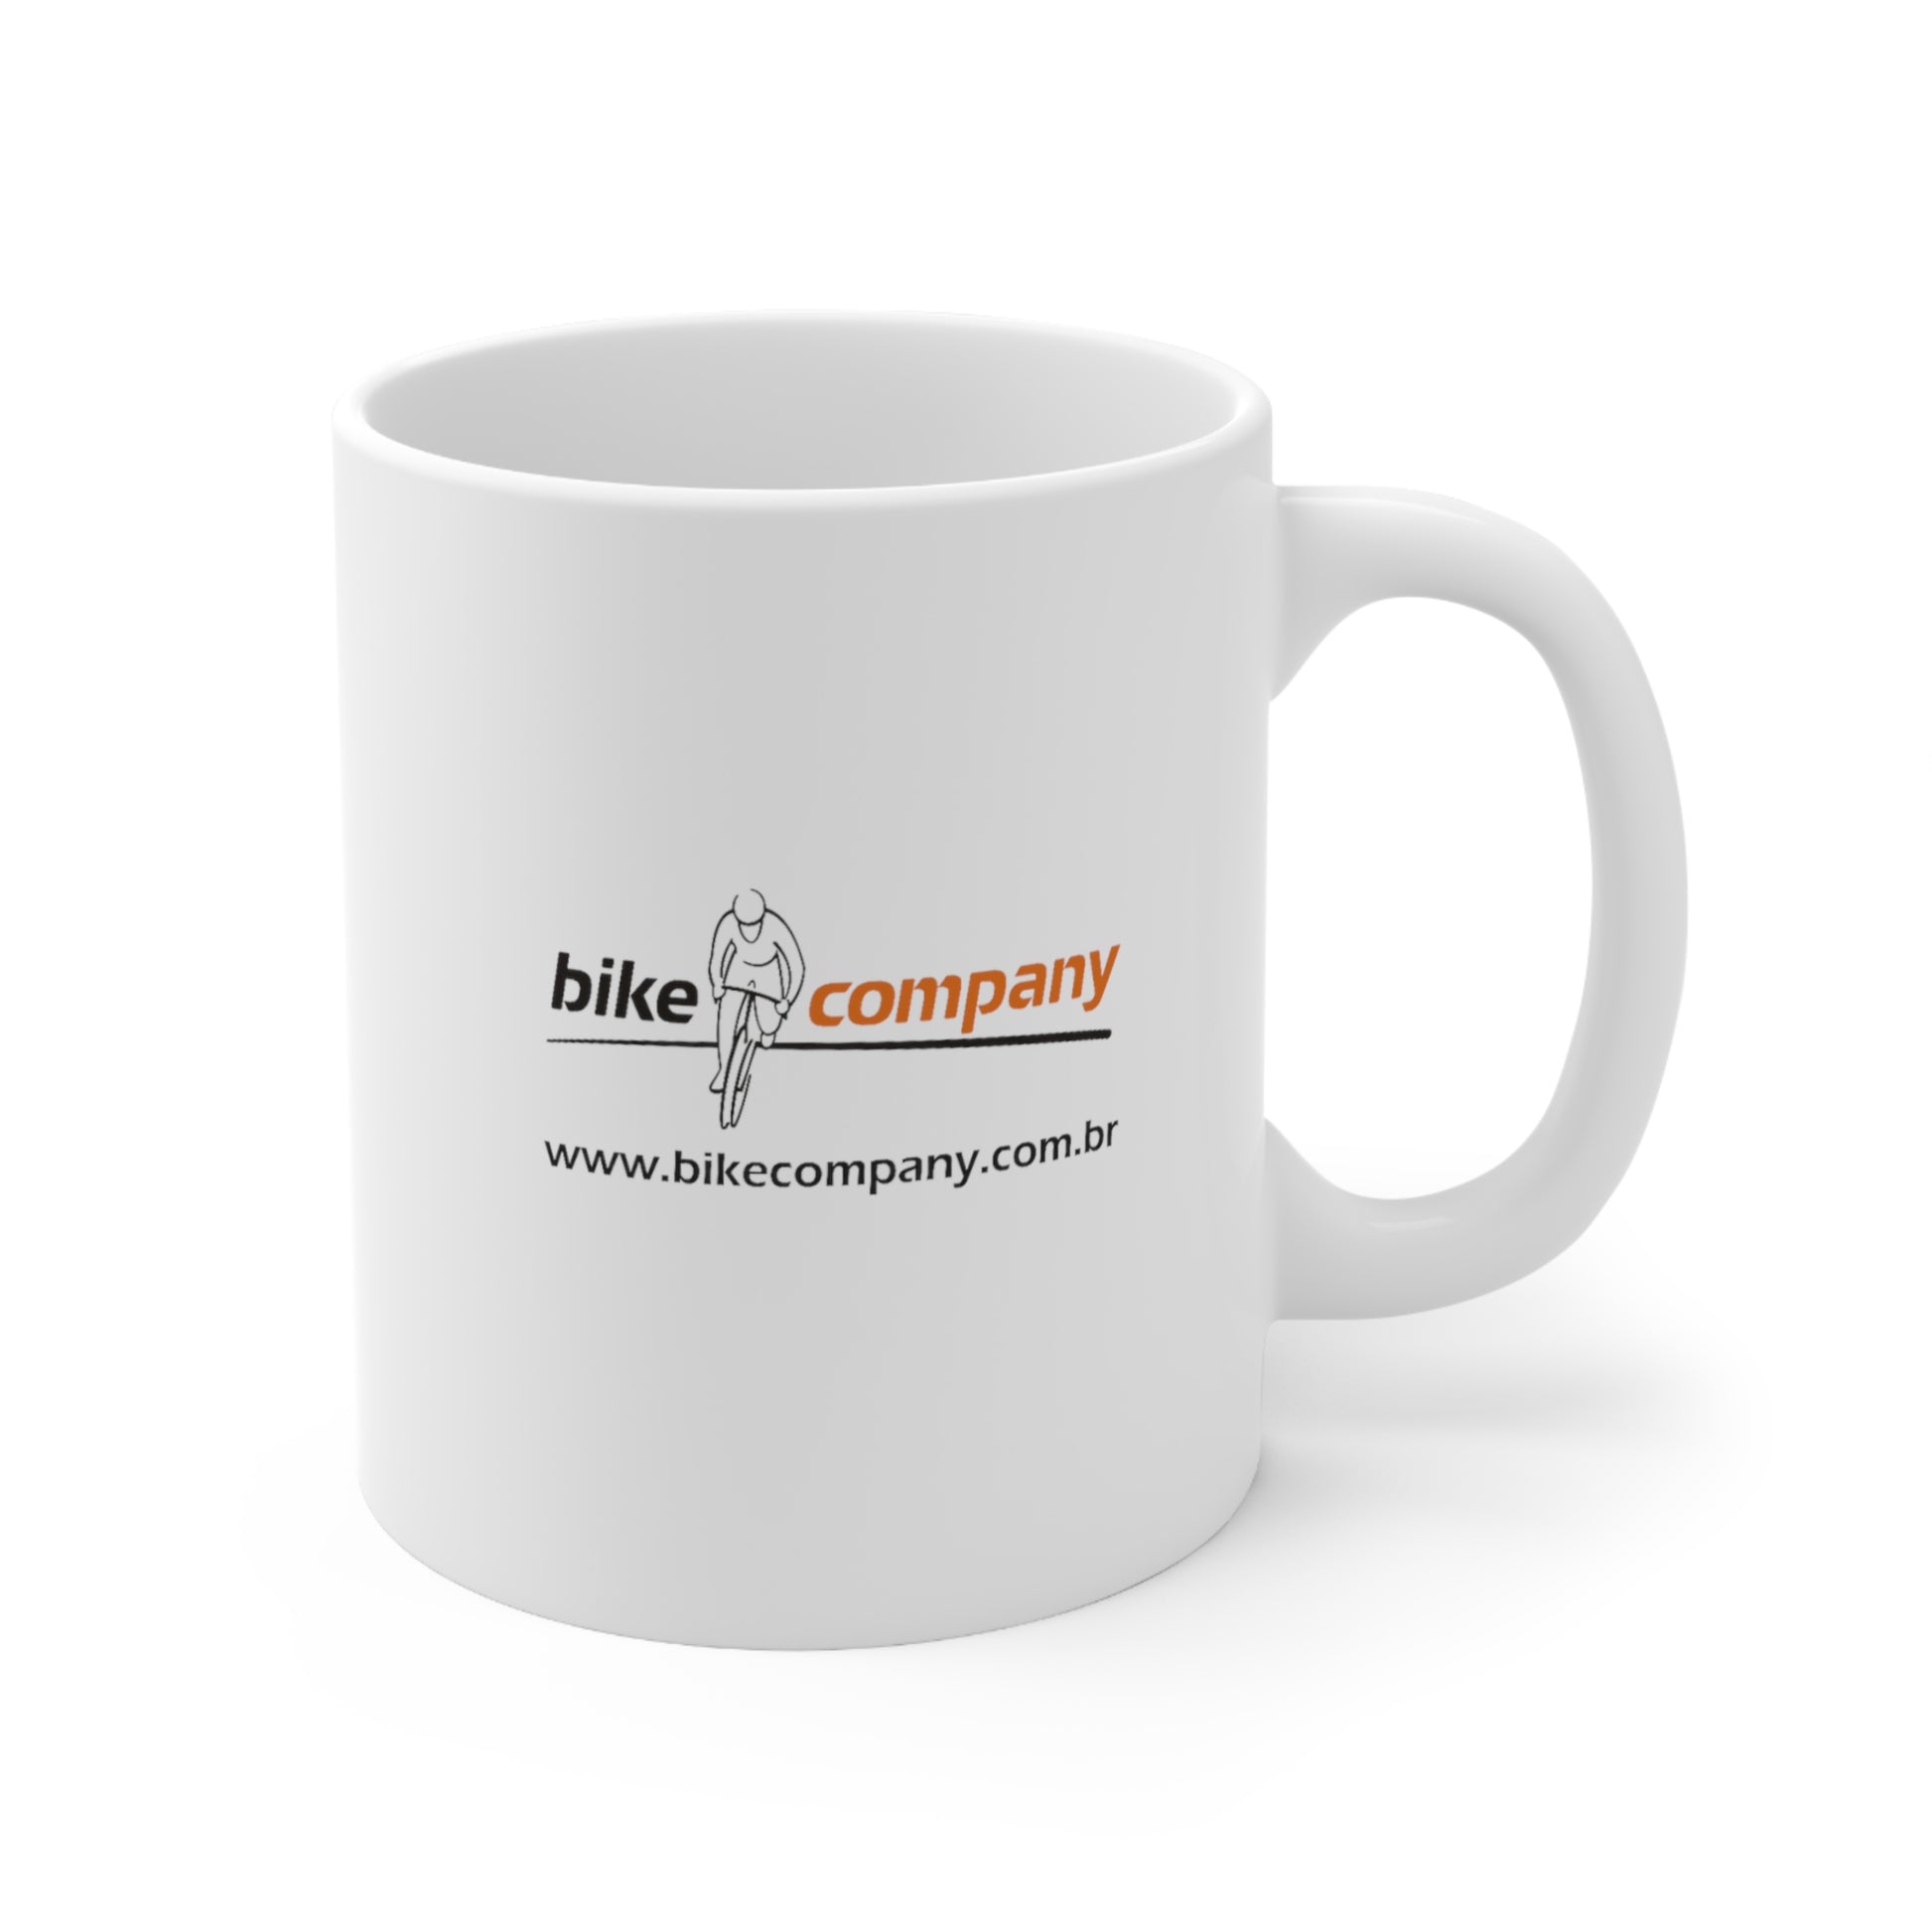 Bike Company Ceramic Mug